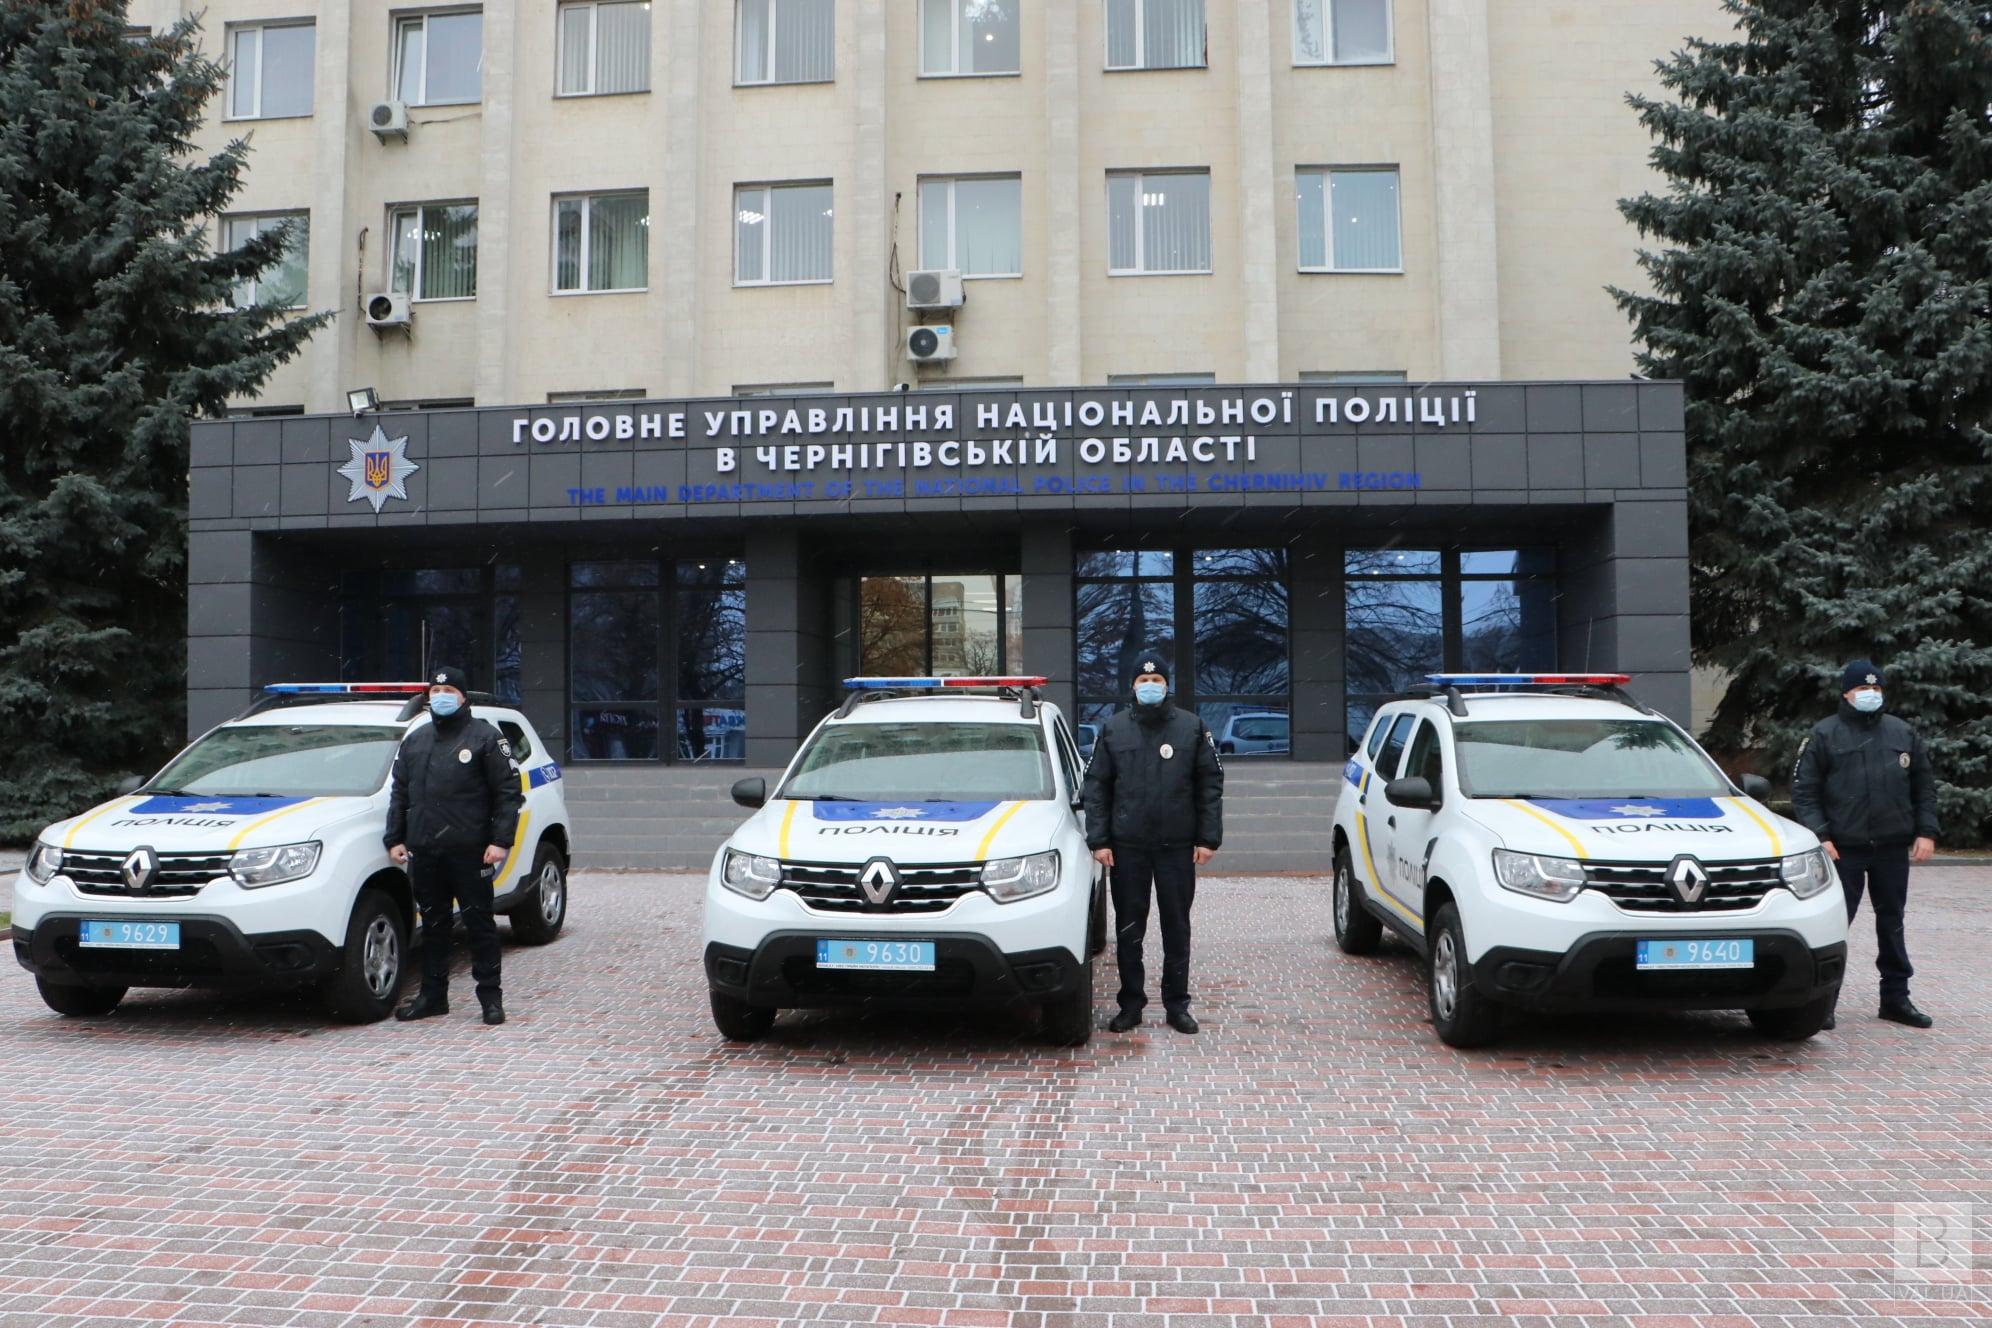 Поліцейські підрозділи Чернігівщині поповнилися трьома новими авто. ФОТО